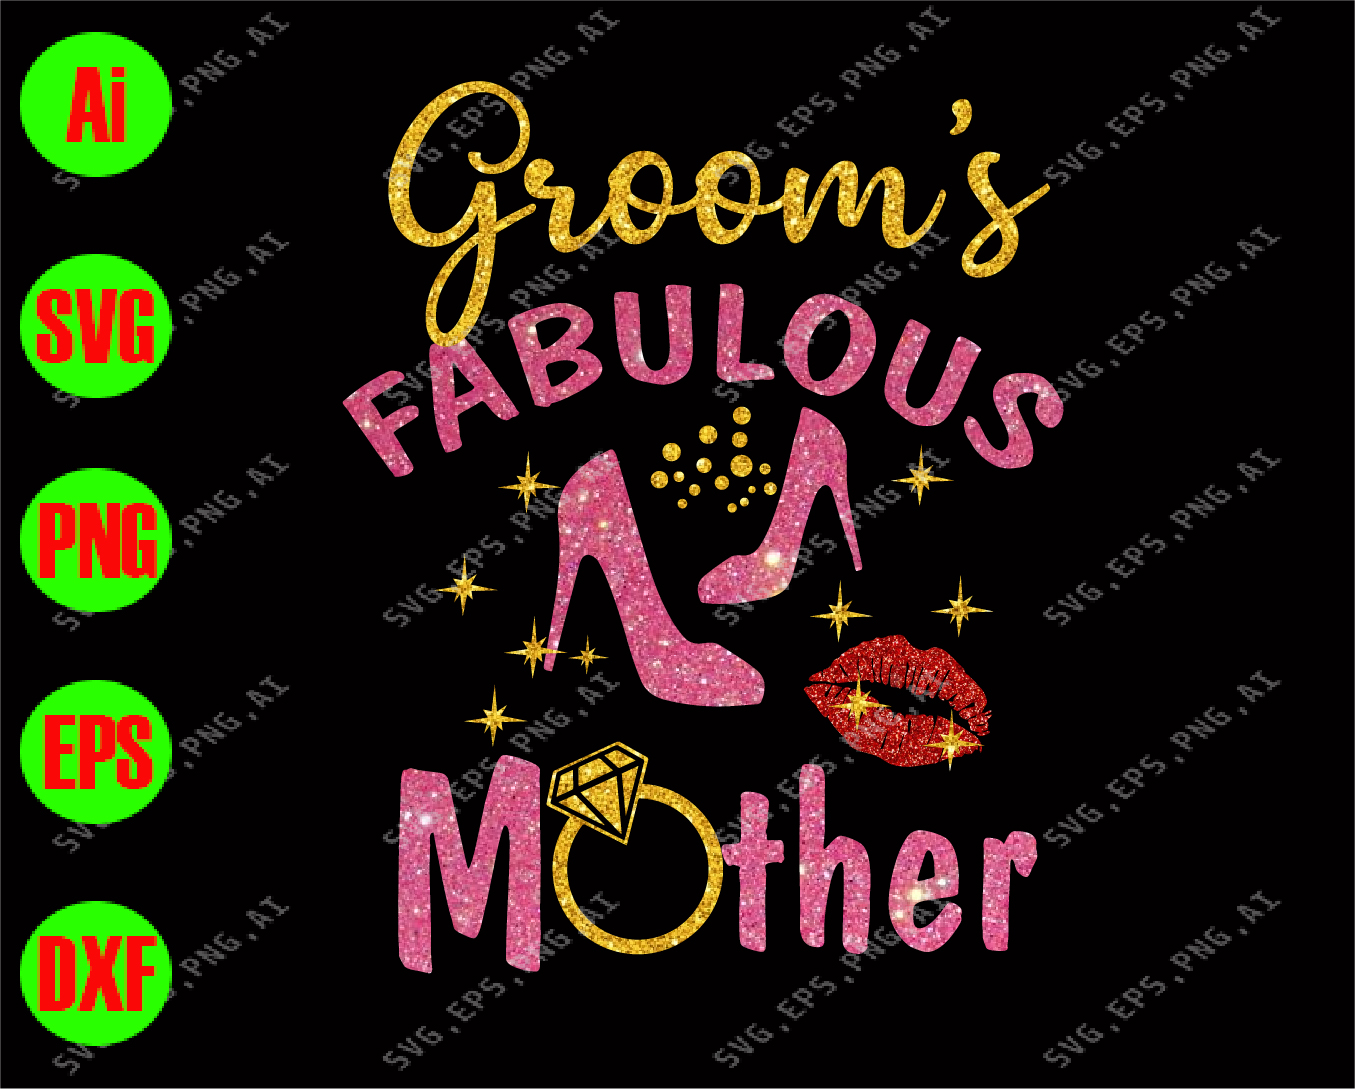 Groom S Fabulous Mother Svg Dxf Eps Png Digital Download Designbtf Com